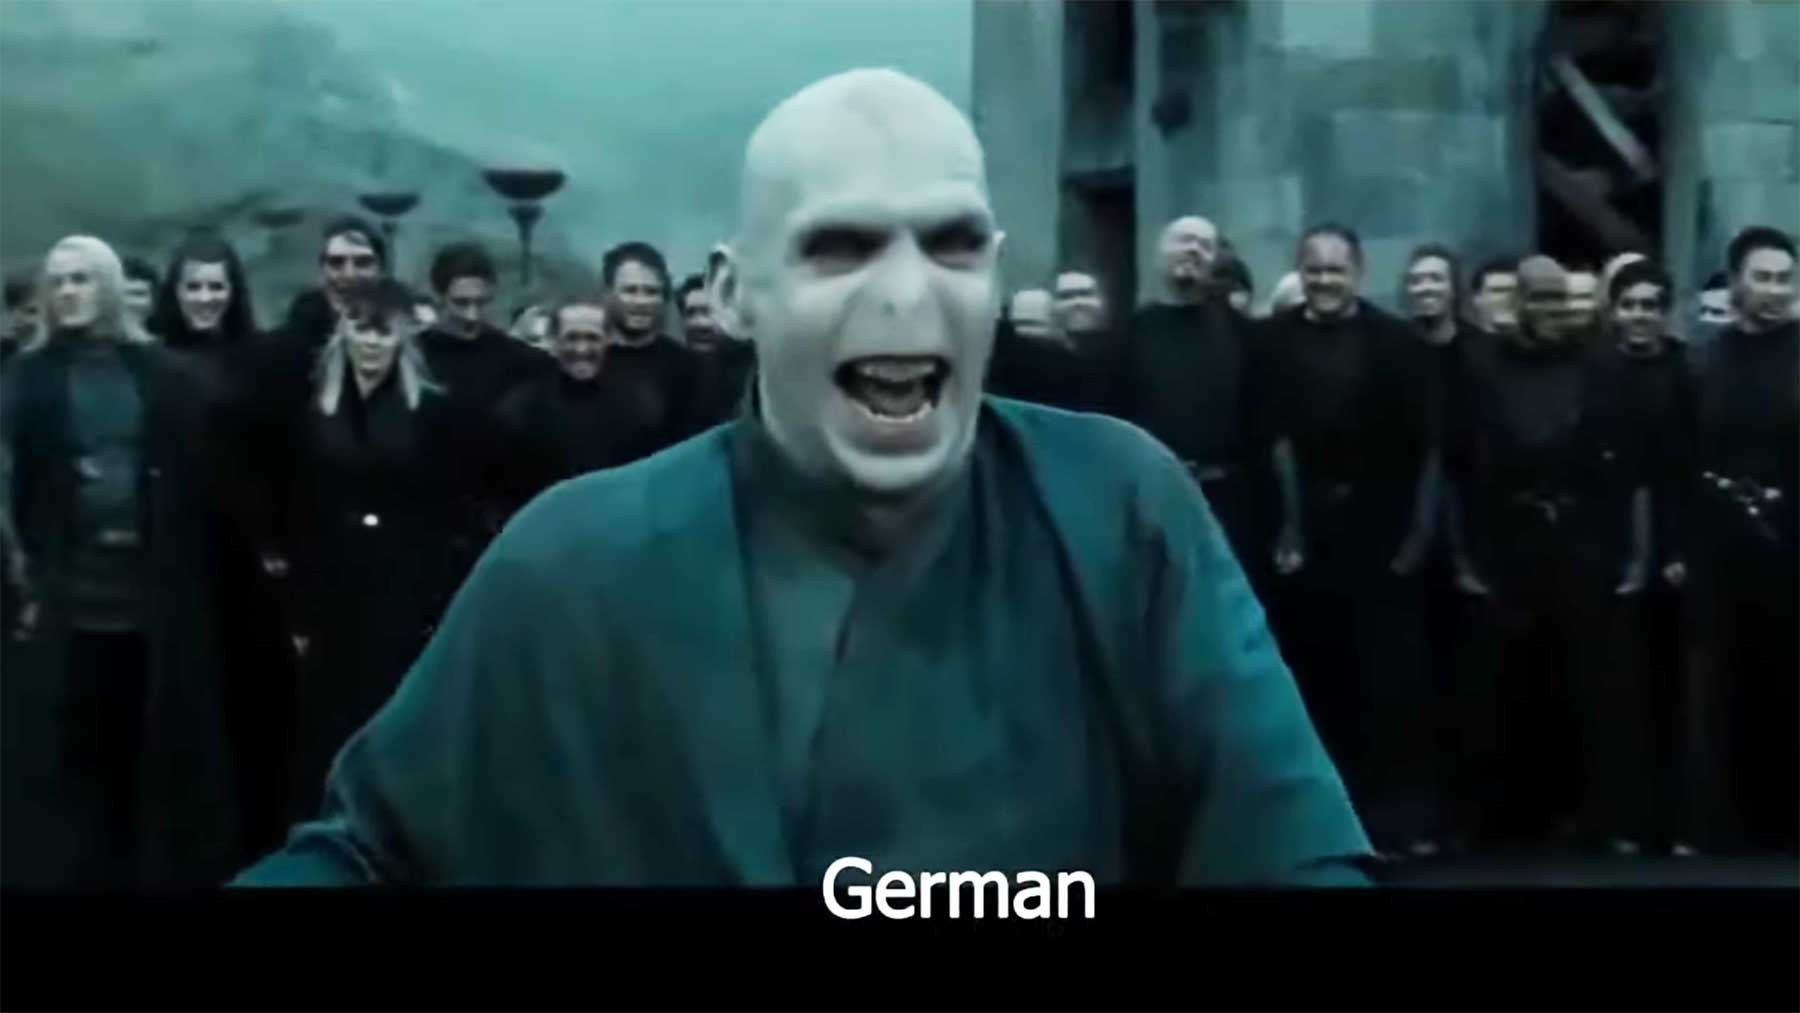 Voldemorts Lachen in 11 unterschiedlichen Sprachen Lord-Voldemort-lachen-in-11-sprachen 